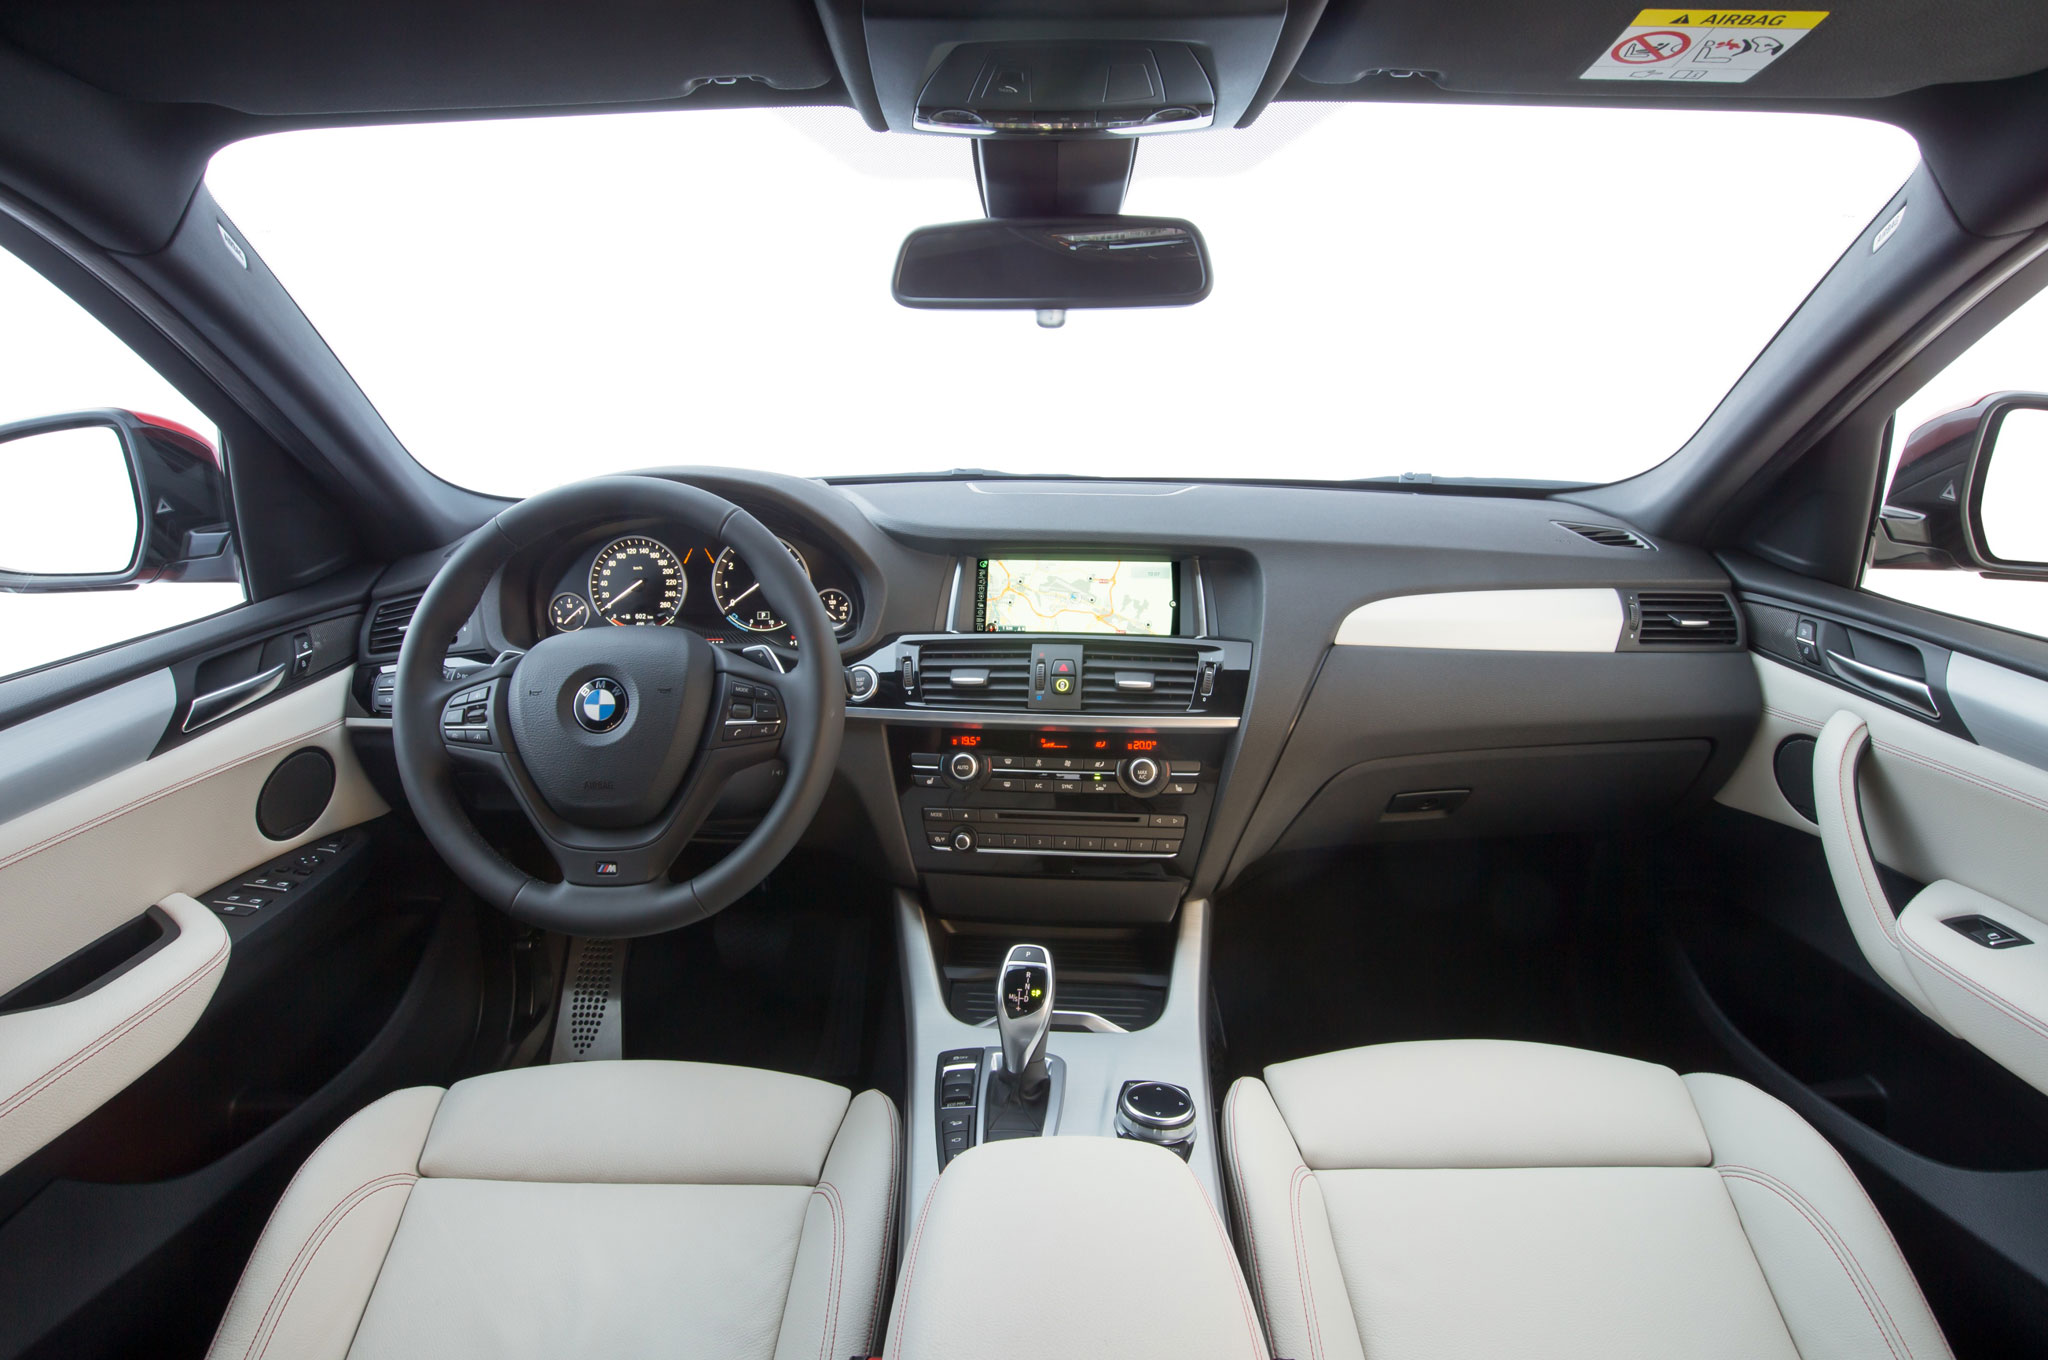 Hình ảnh chi tiết BMW X4 có giá bán 2,768 tỉ đồng tại Việt Nam